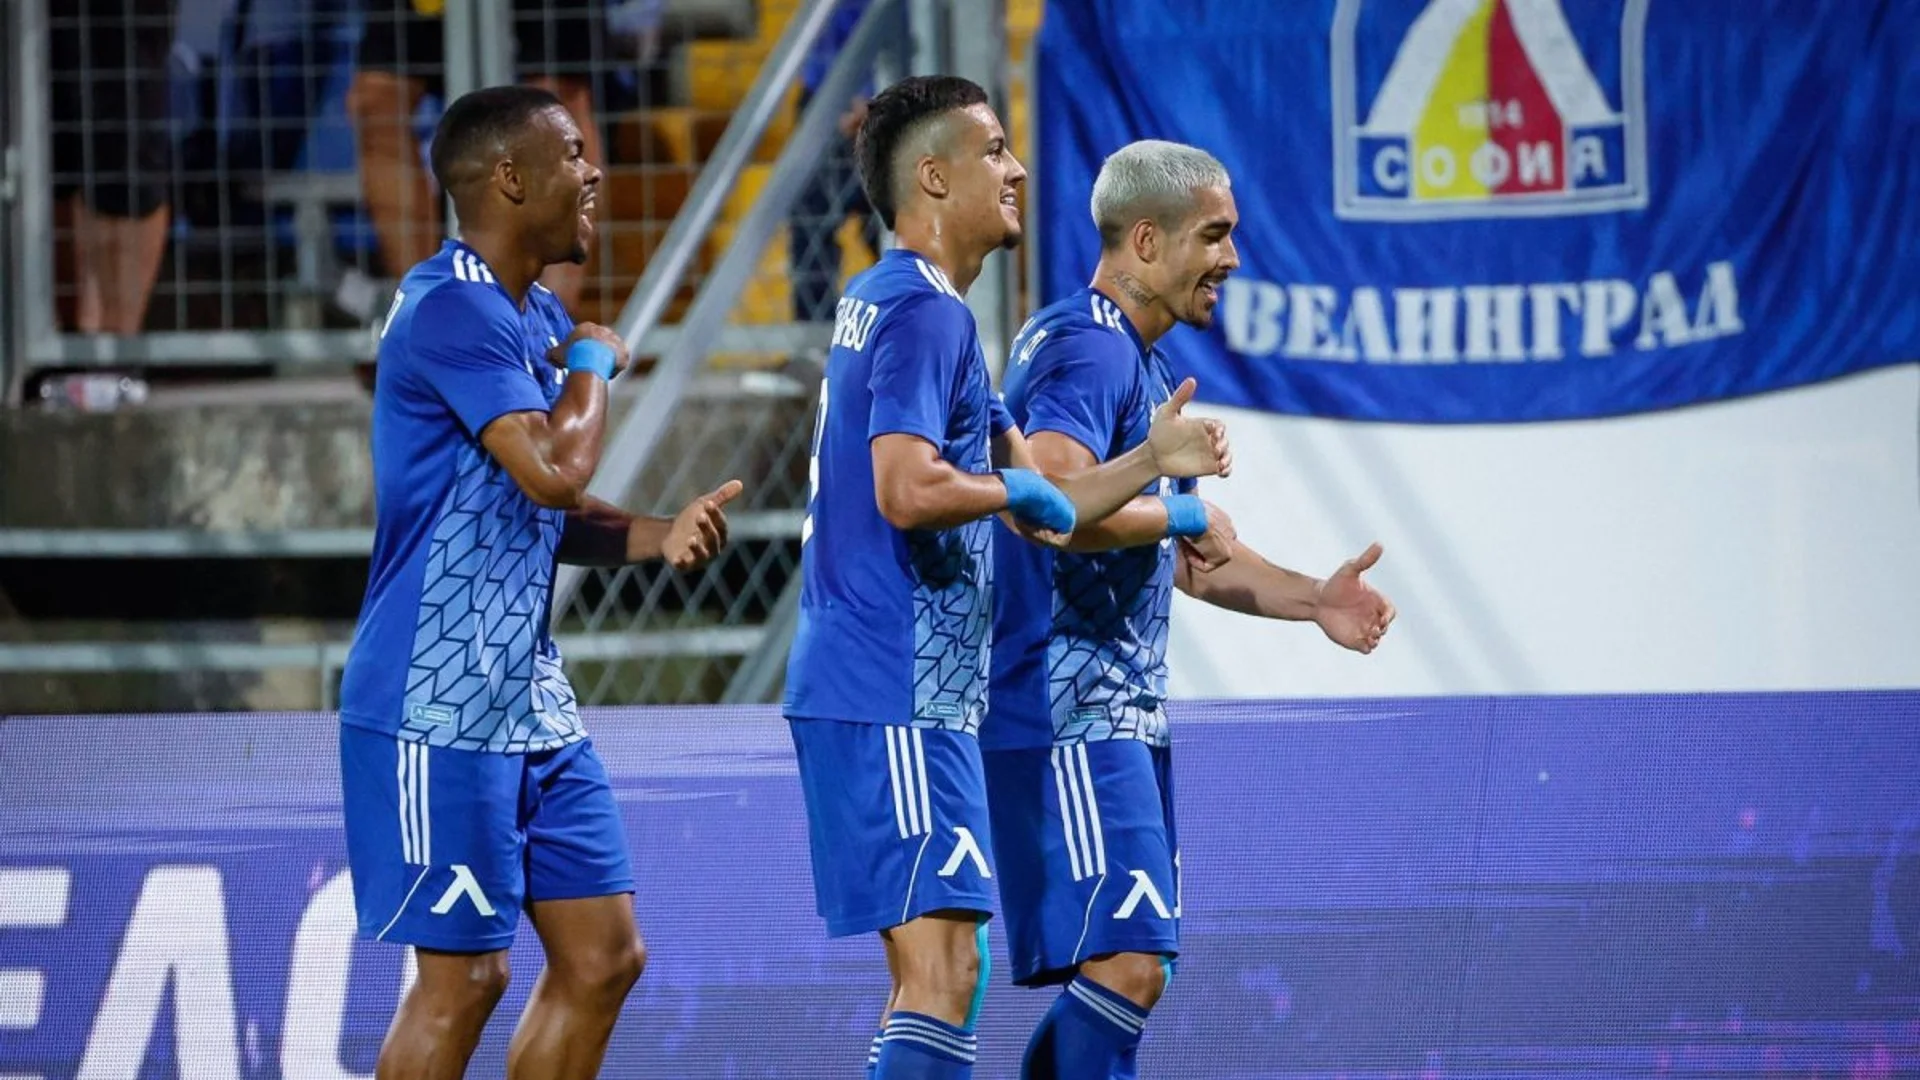 "Синя" легенда посочи 4-ма играчи на Левски, които трябва да преосмислят формата си